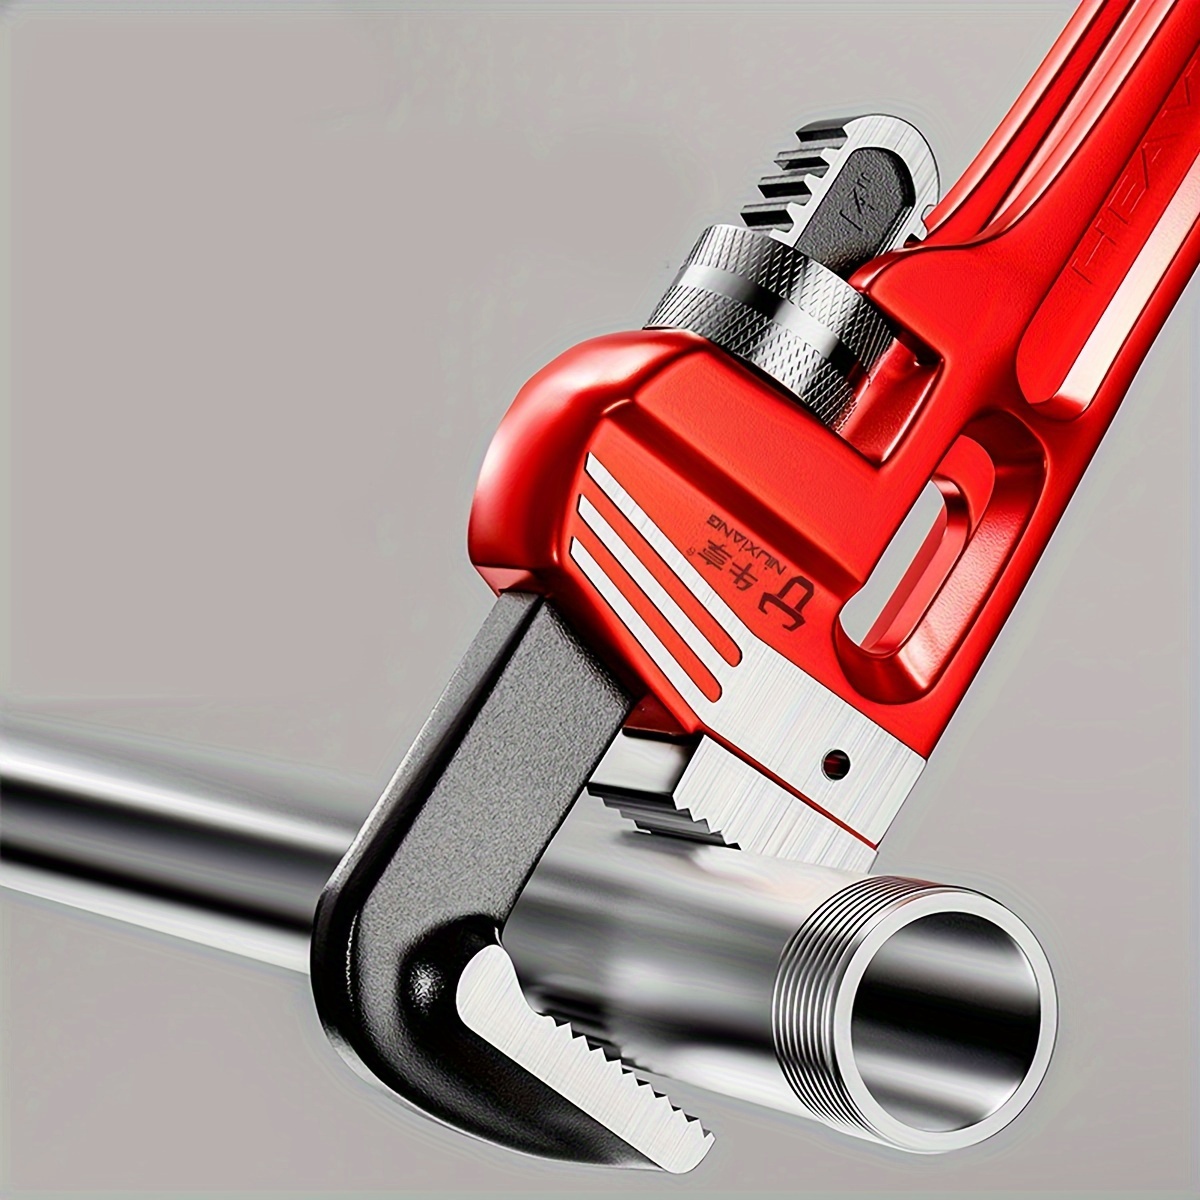 Adjustable Plumbers Wrench